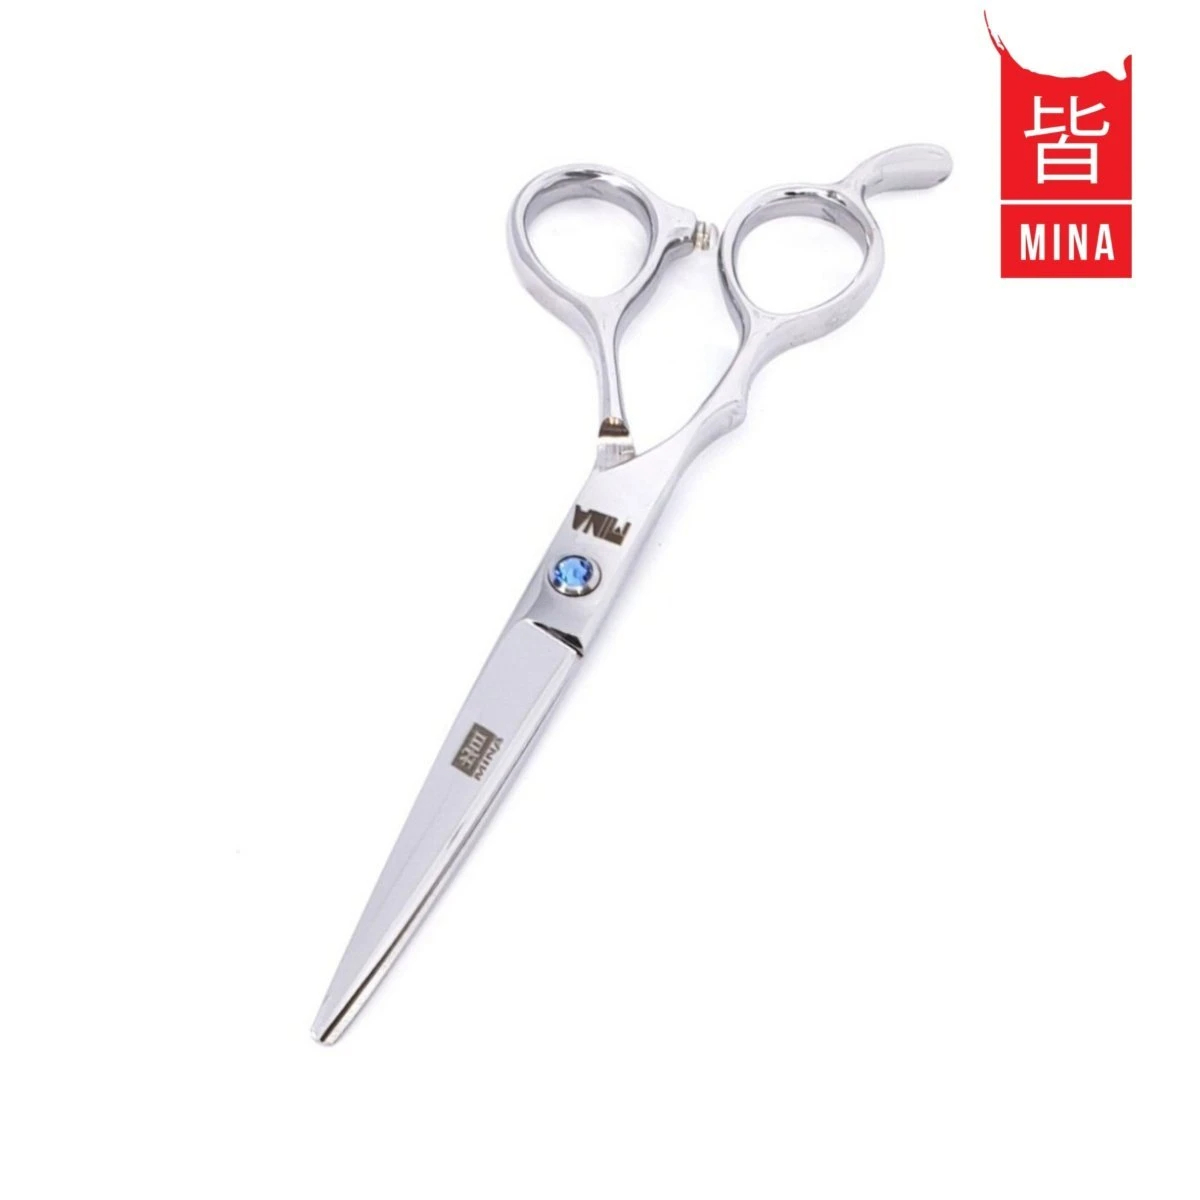 Mina Umi Scissors